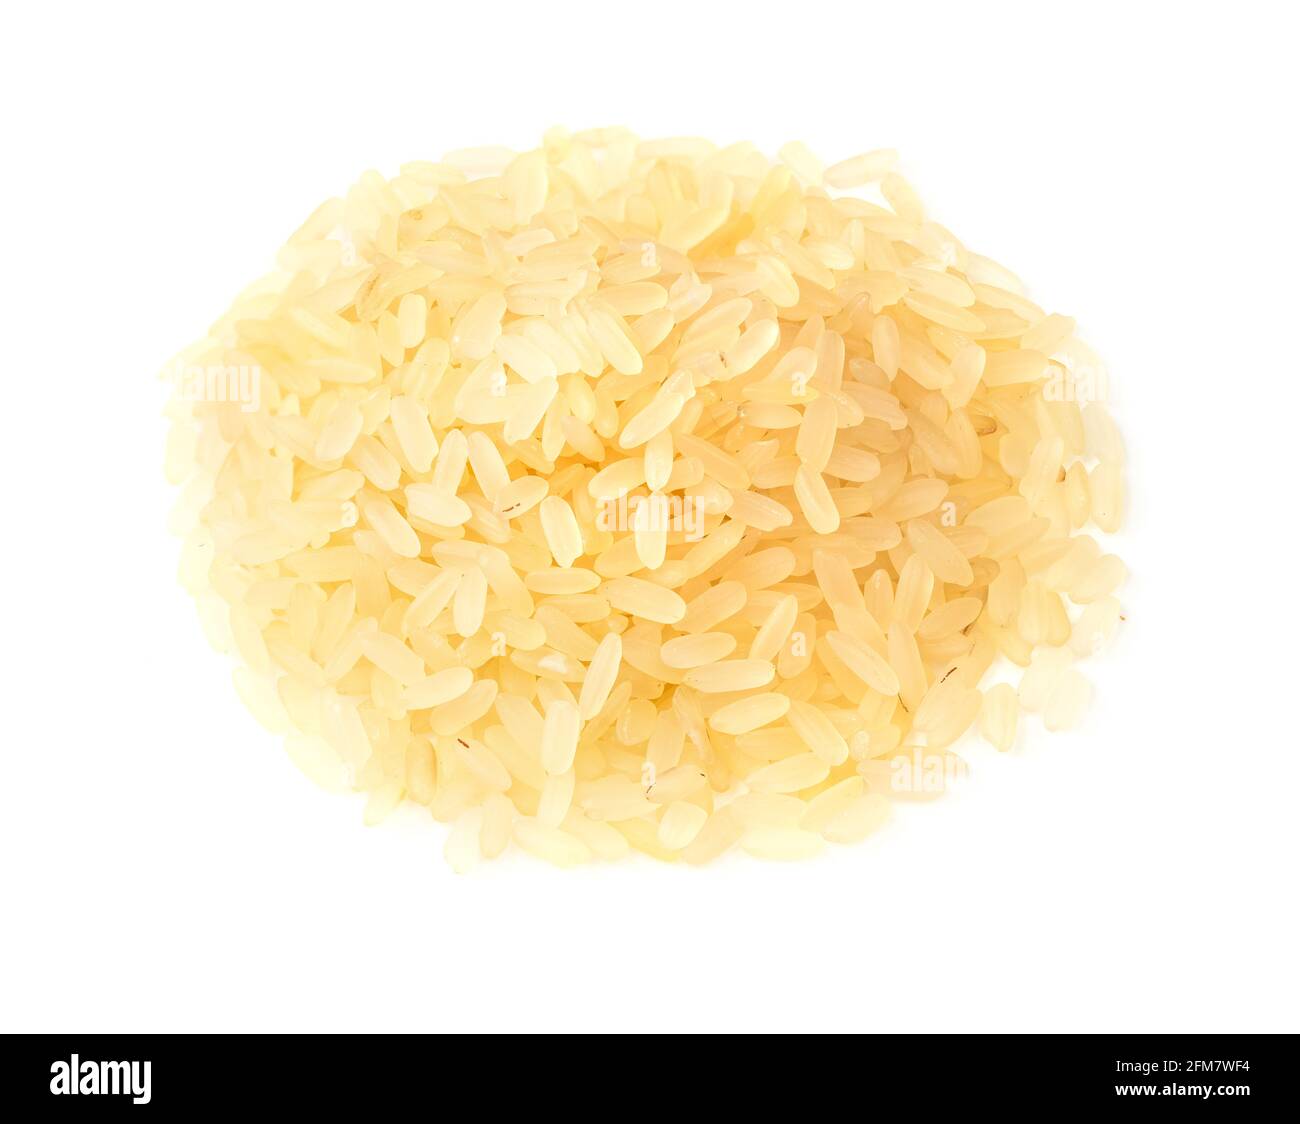 pile de riz étuvé brut sur fond blanc Banque D'Images